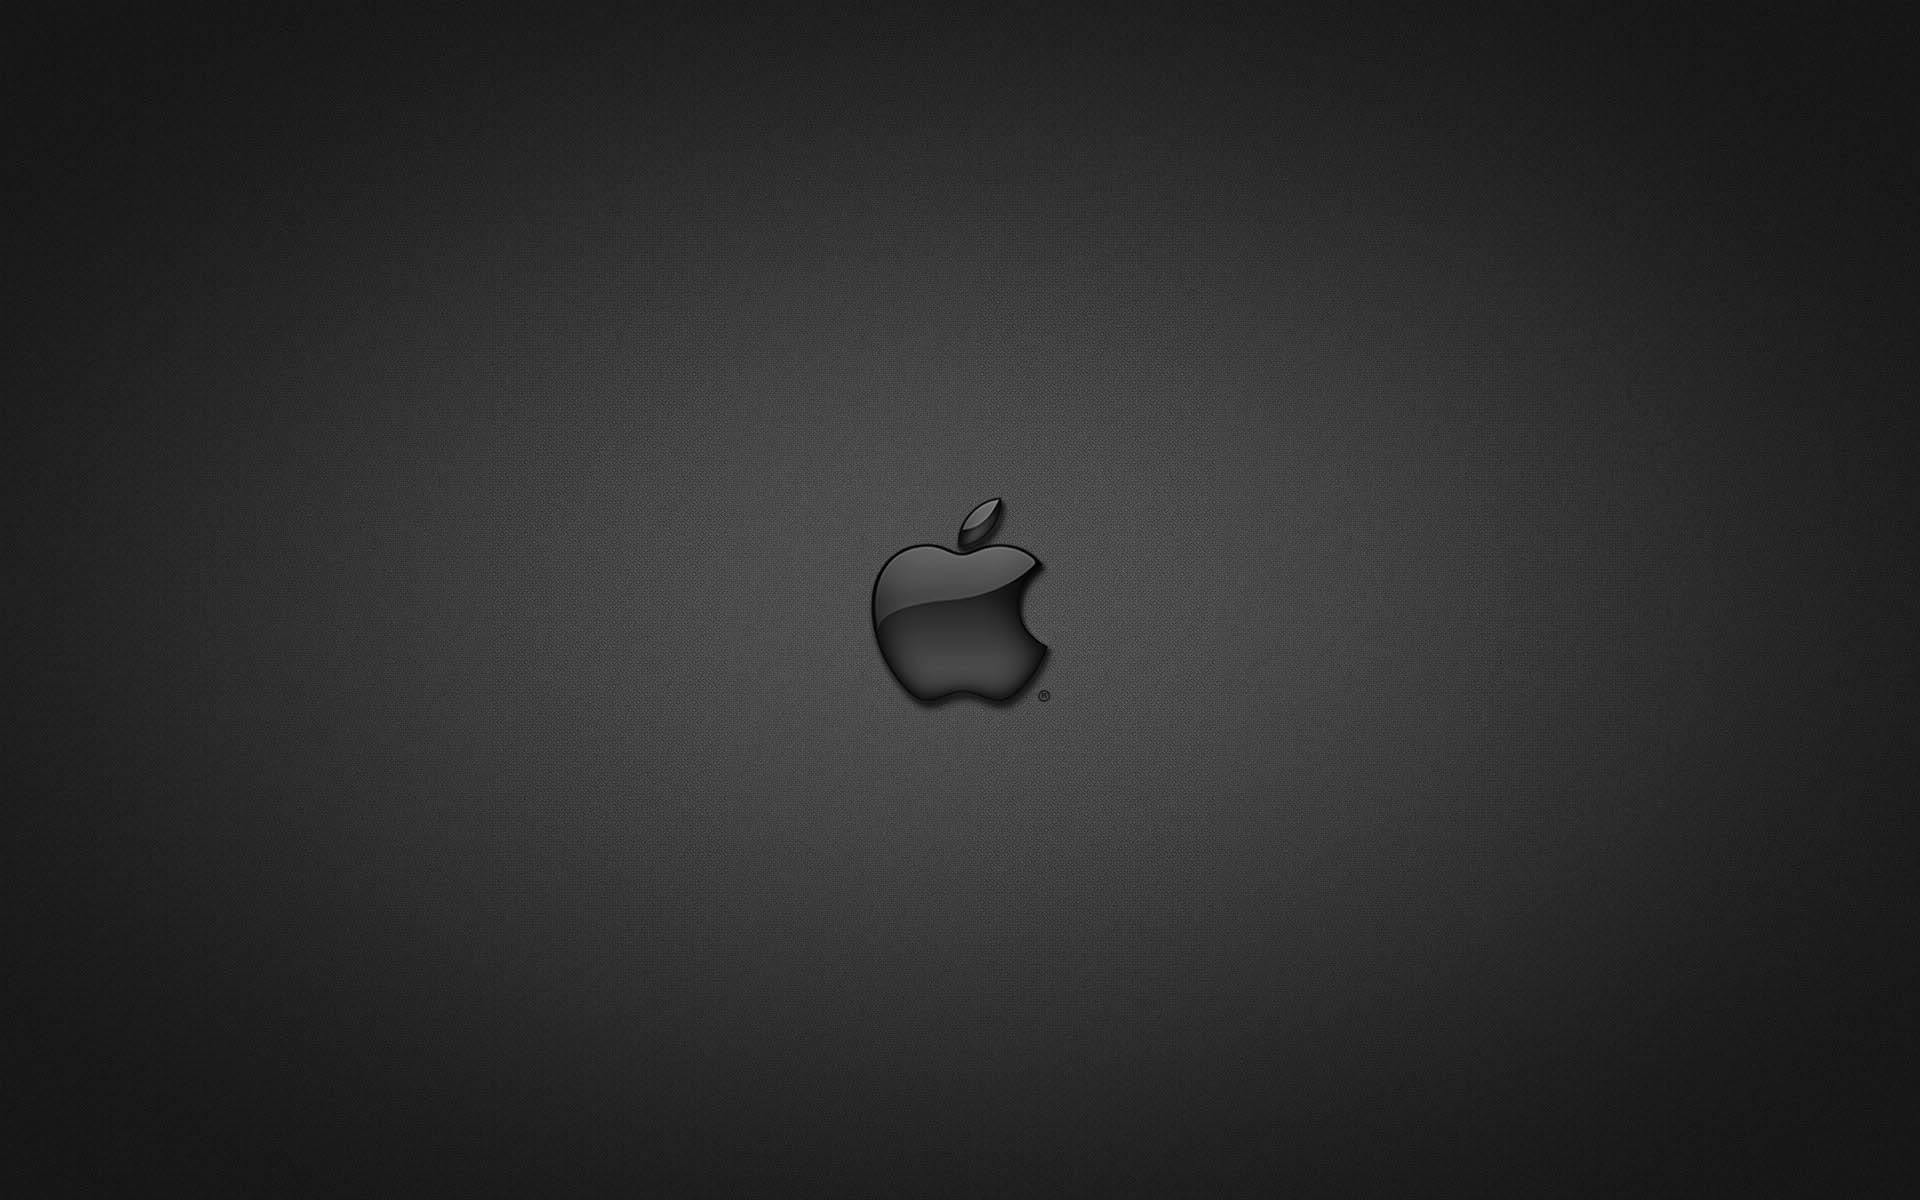 Apple in Glass Black